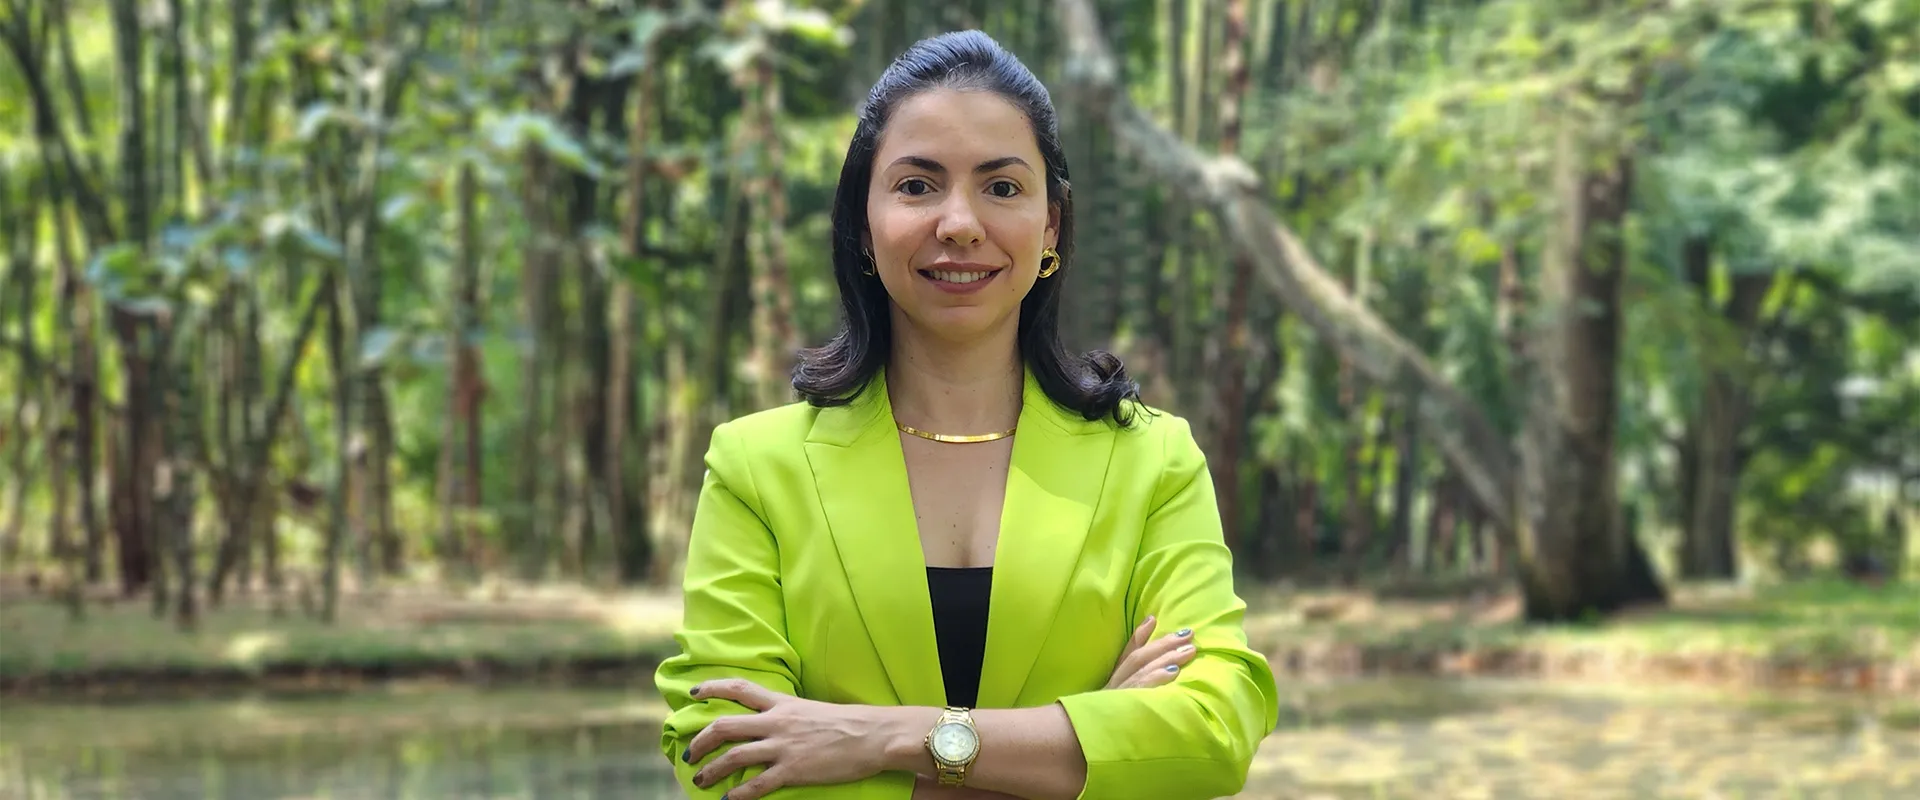 Maria Teresa Cuervo, nueva directora de la carrera de Psicología